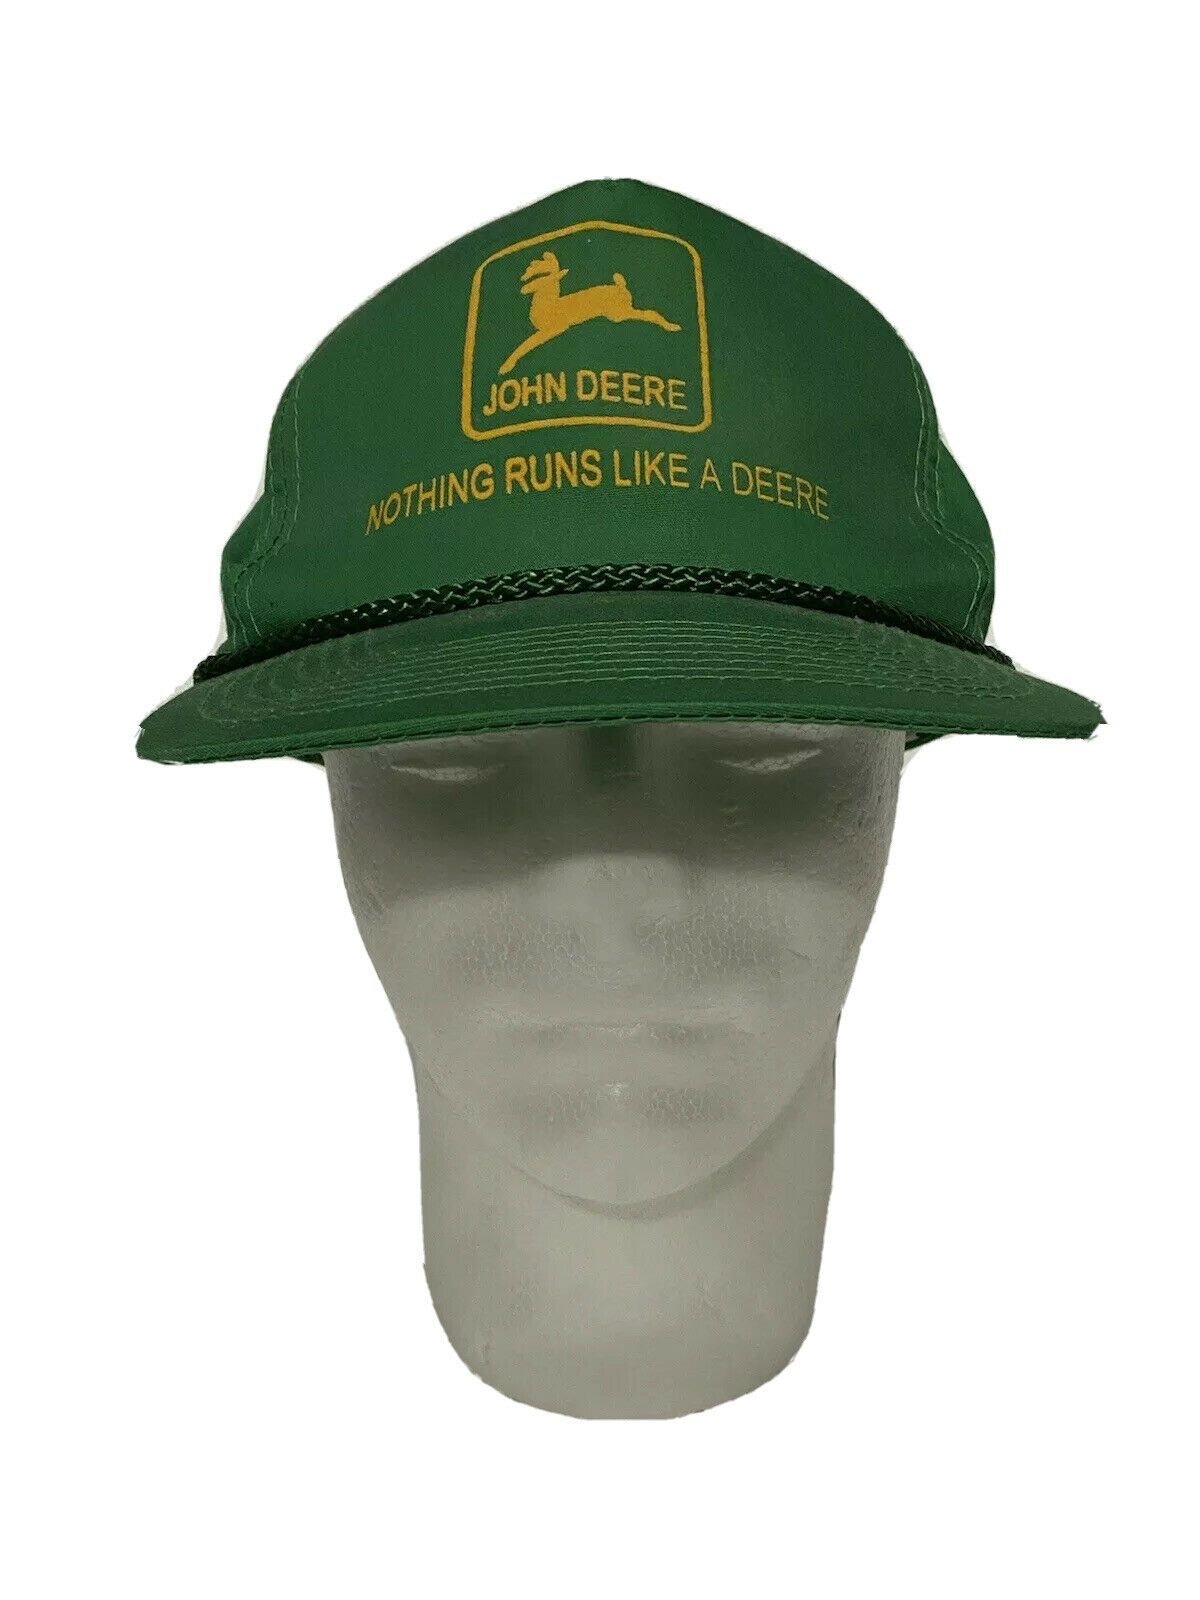 John Deere Tractor Vintage Trucker Hat Green Snapback Cap Attractive Headwear